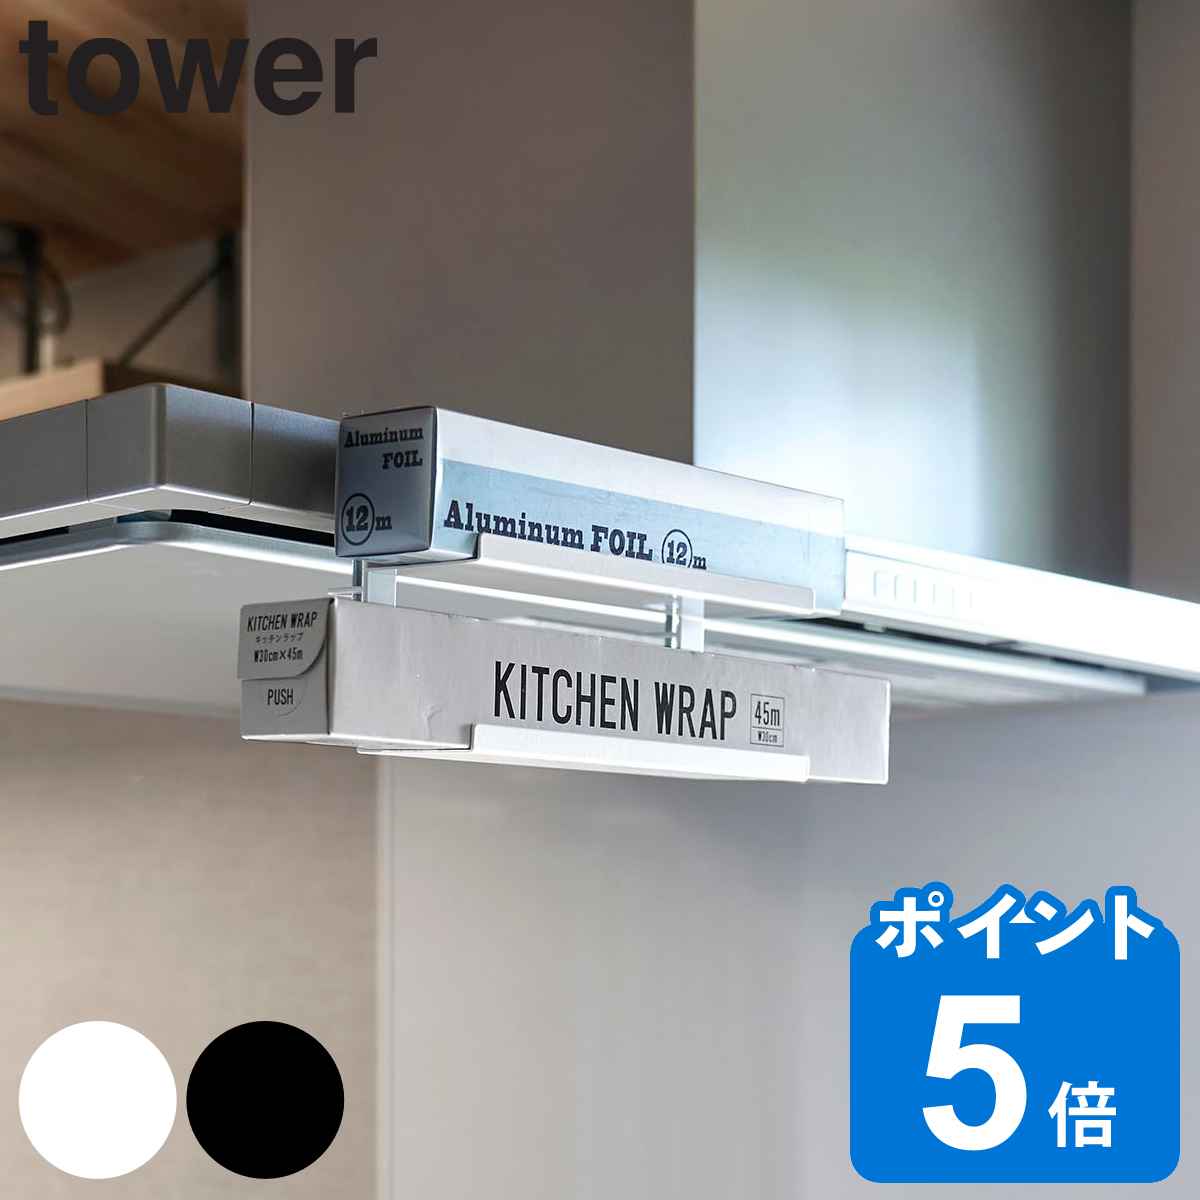 山崎実業 tower レンジフード横ラップ収納 タワー （ タワーシリーズ ラップ収納 キッチン収納 ラップ アルミホイル ラップホルダー アル